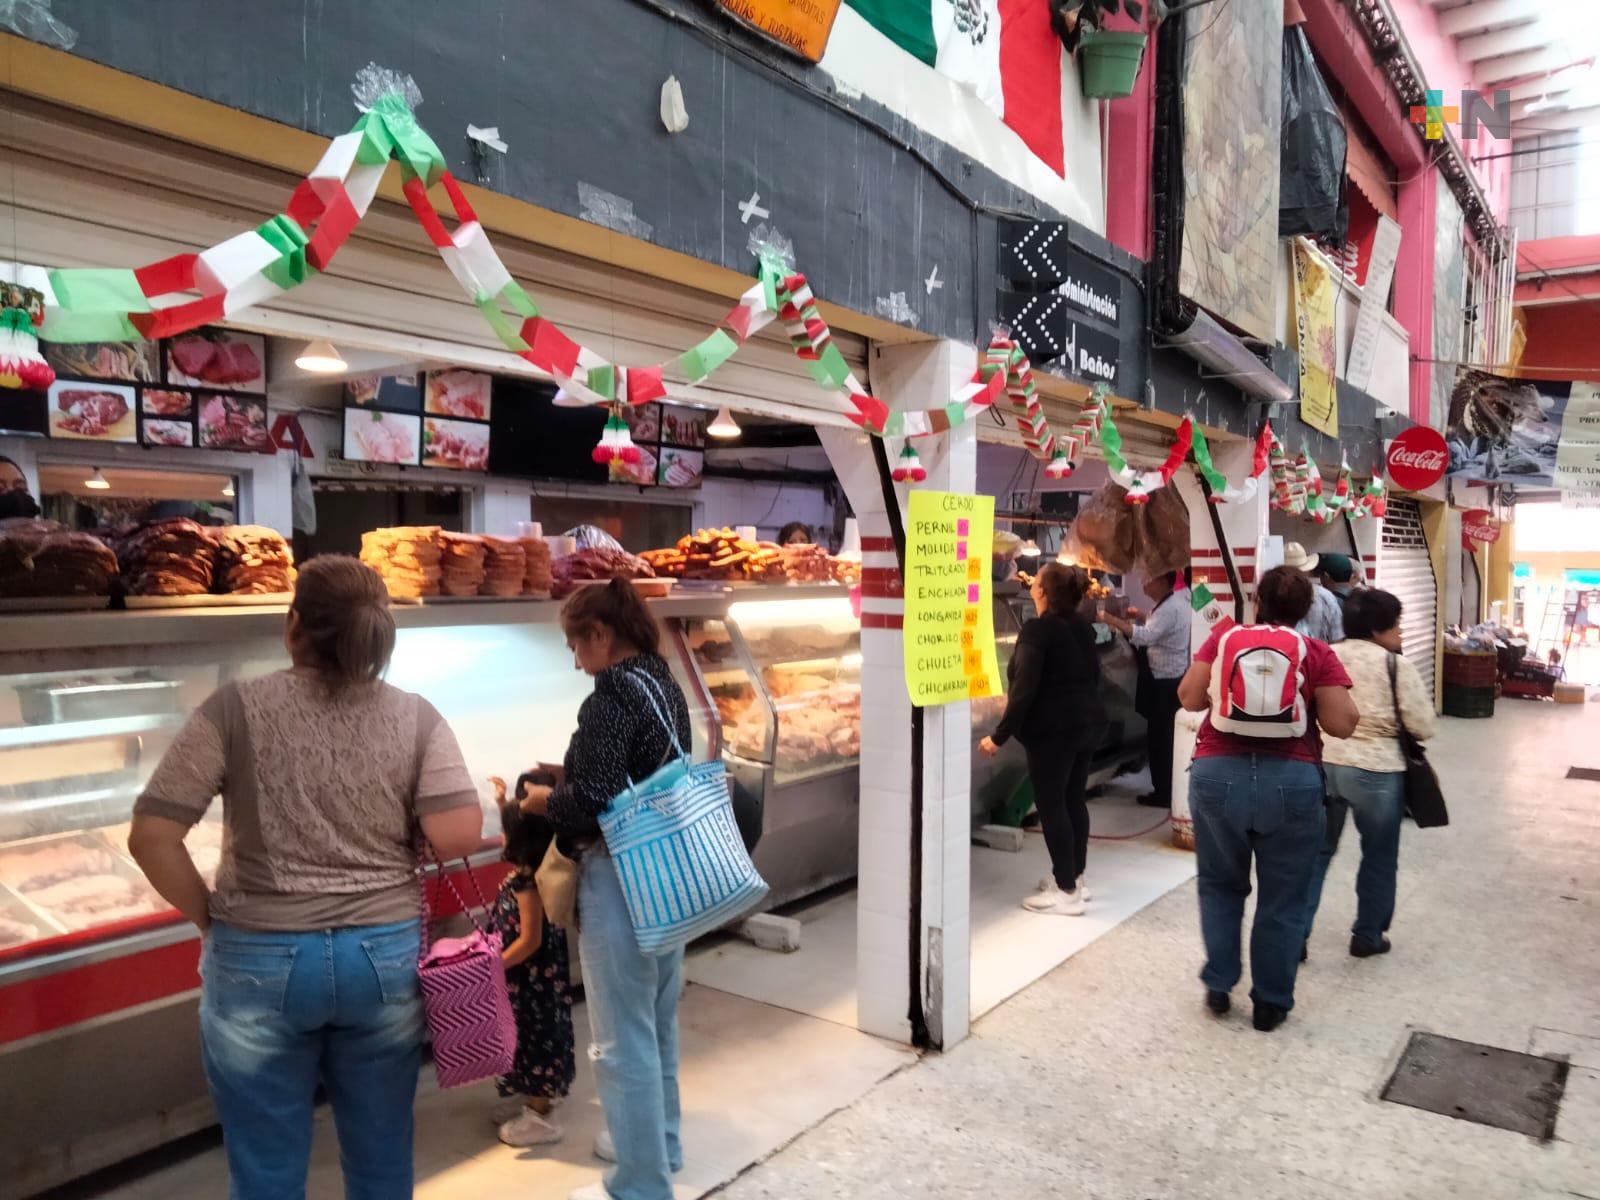 En Xalapa ya se hacen los preparativos para celebrar en familia la noche mexicana